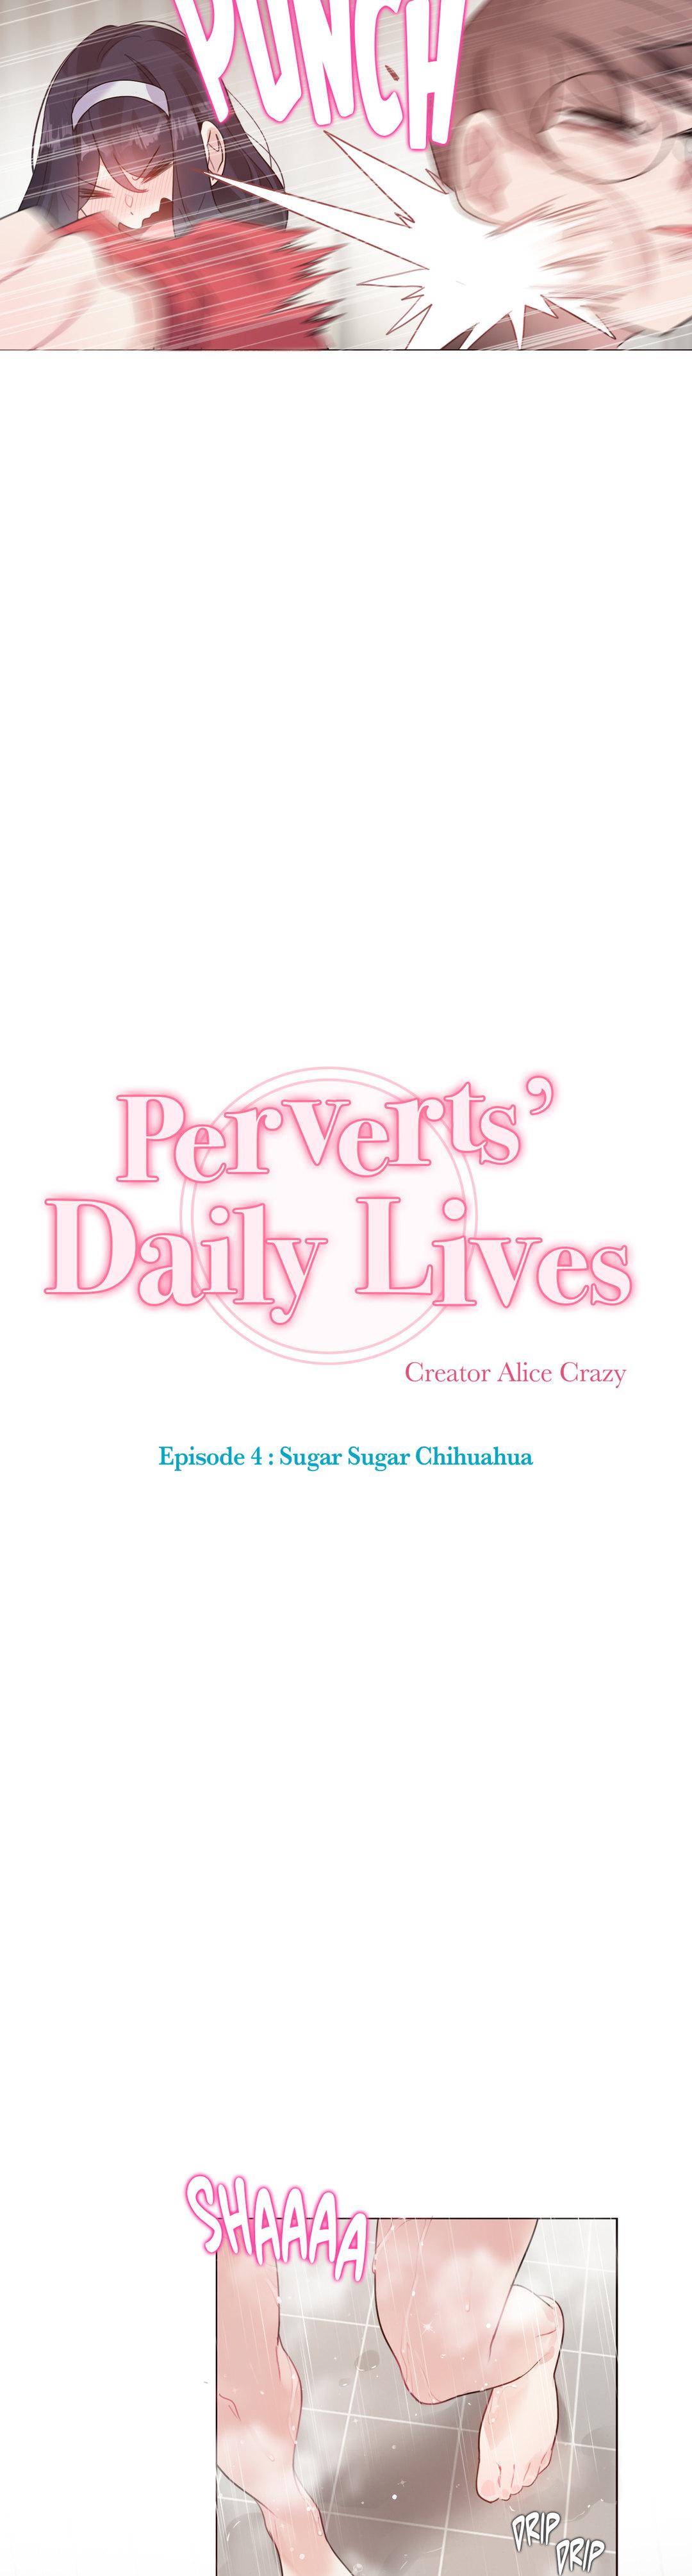 Perverts' Daily Lives Episode 4: Sugar Sugar Chihuahua 148